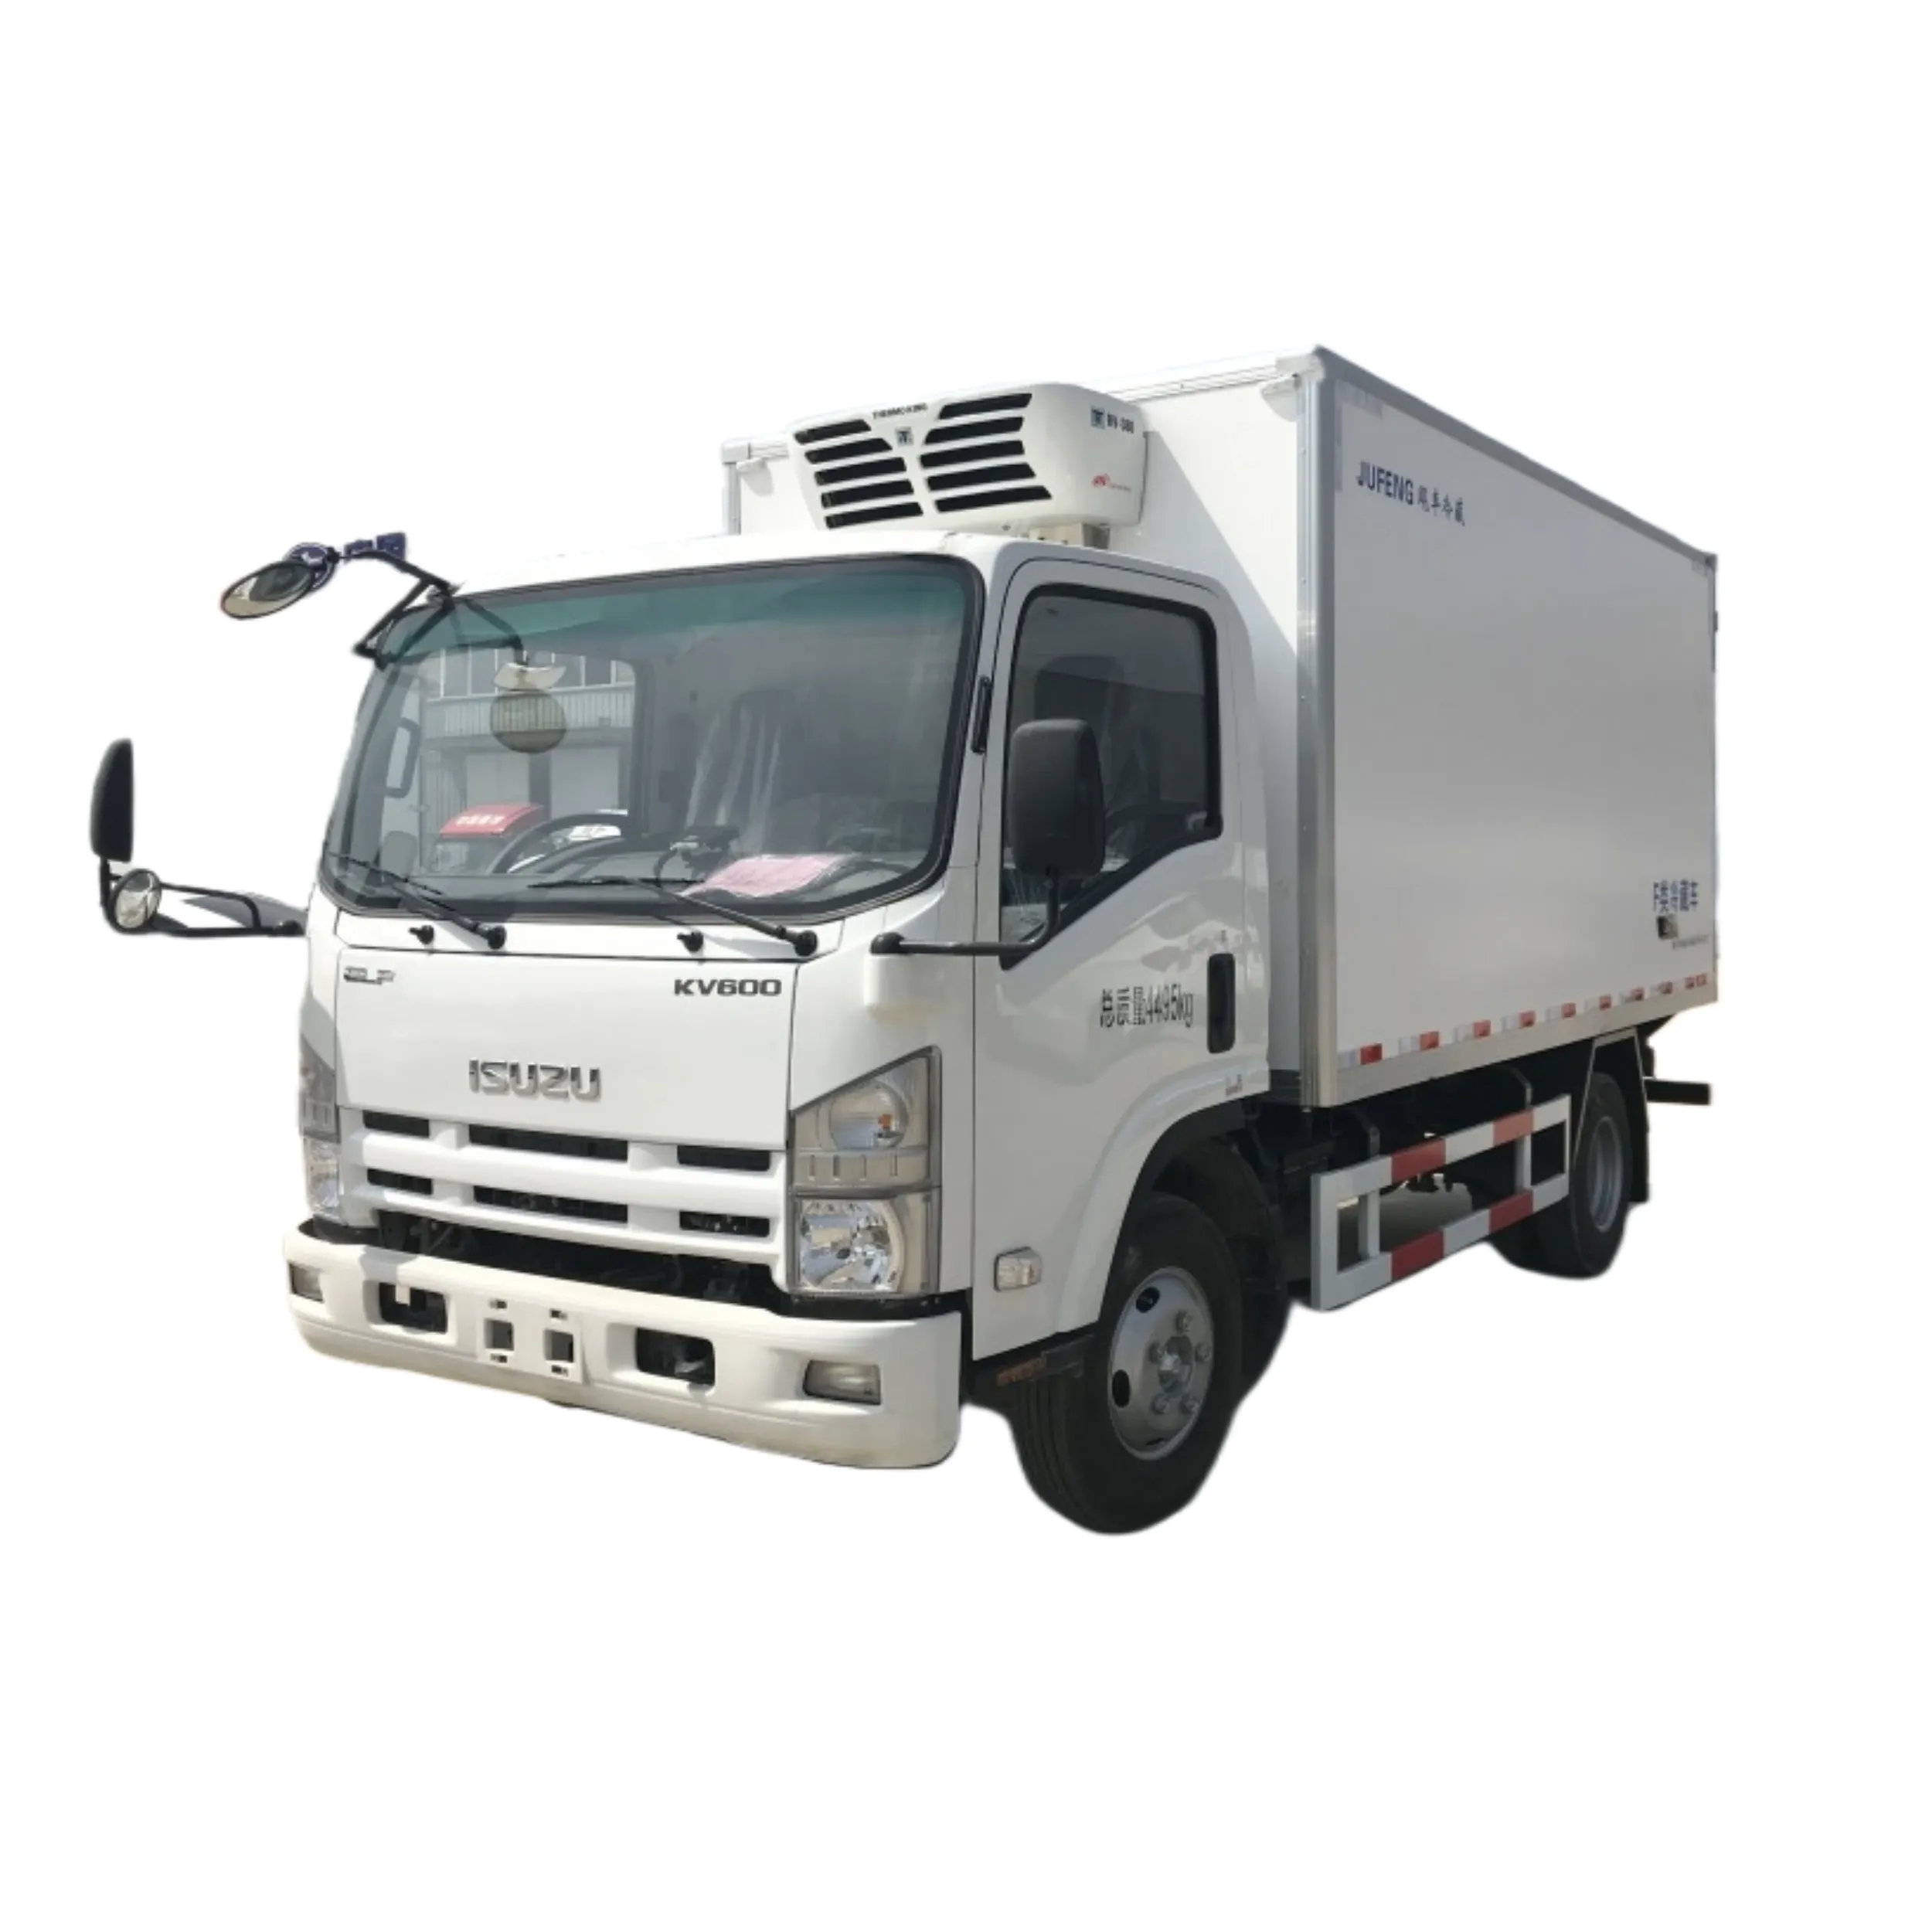 Sıcak satış ISUZU KV600 şasi buzdolabı taşımacılığı için yeni dondurucu kamyon